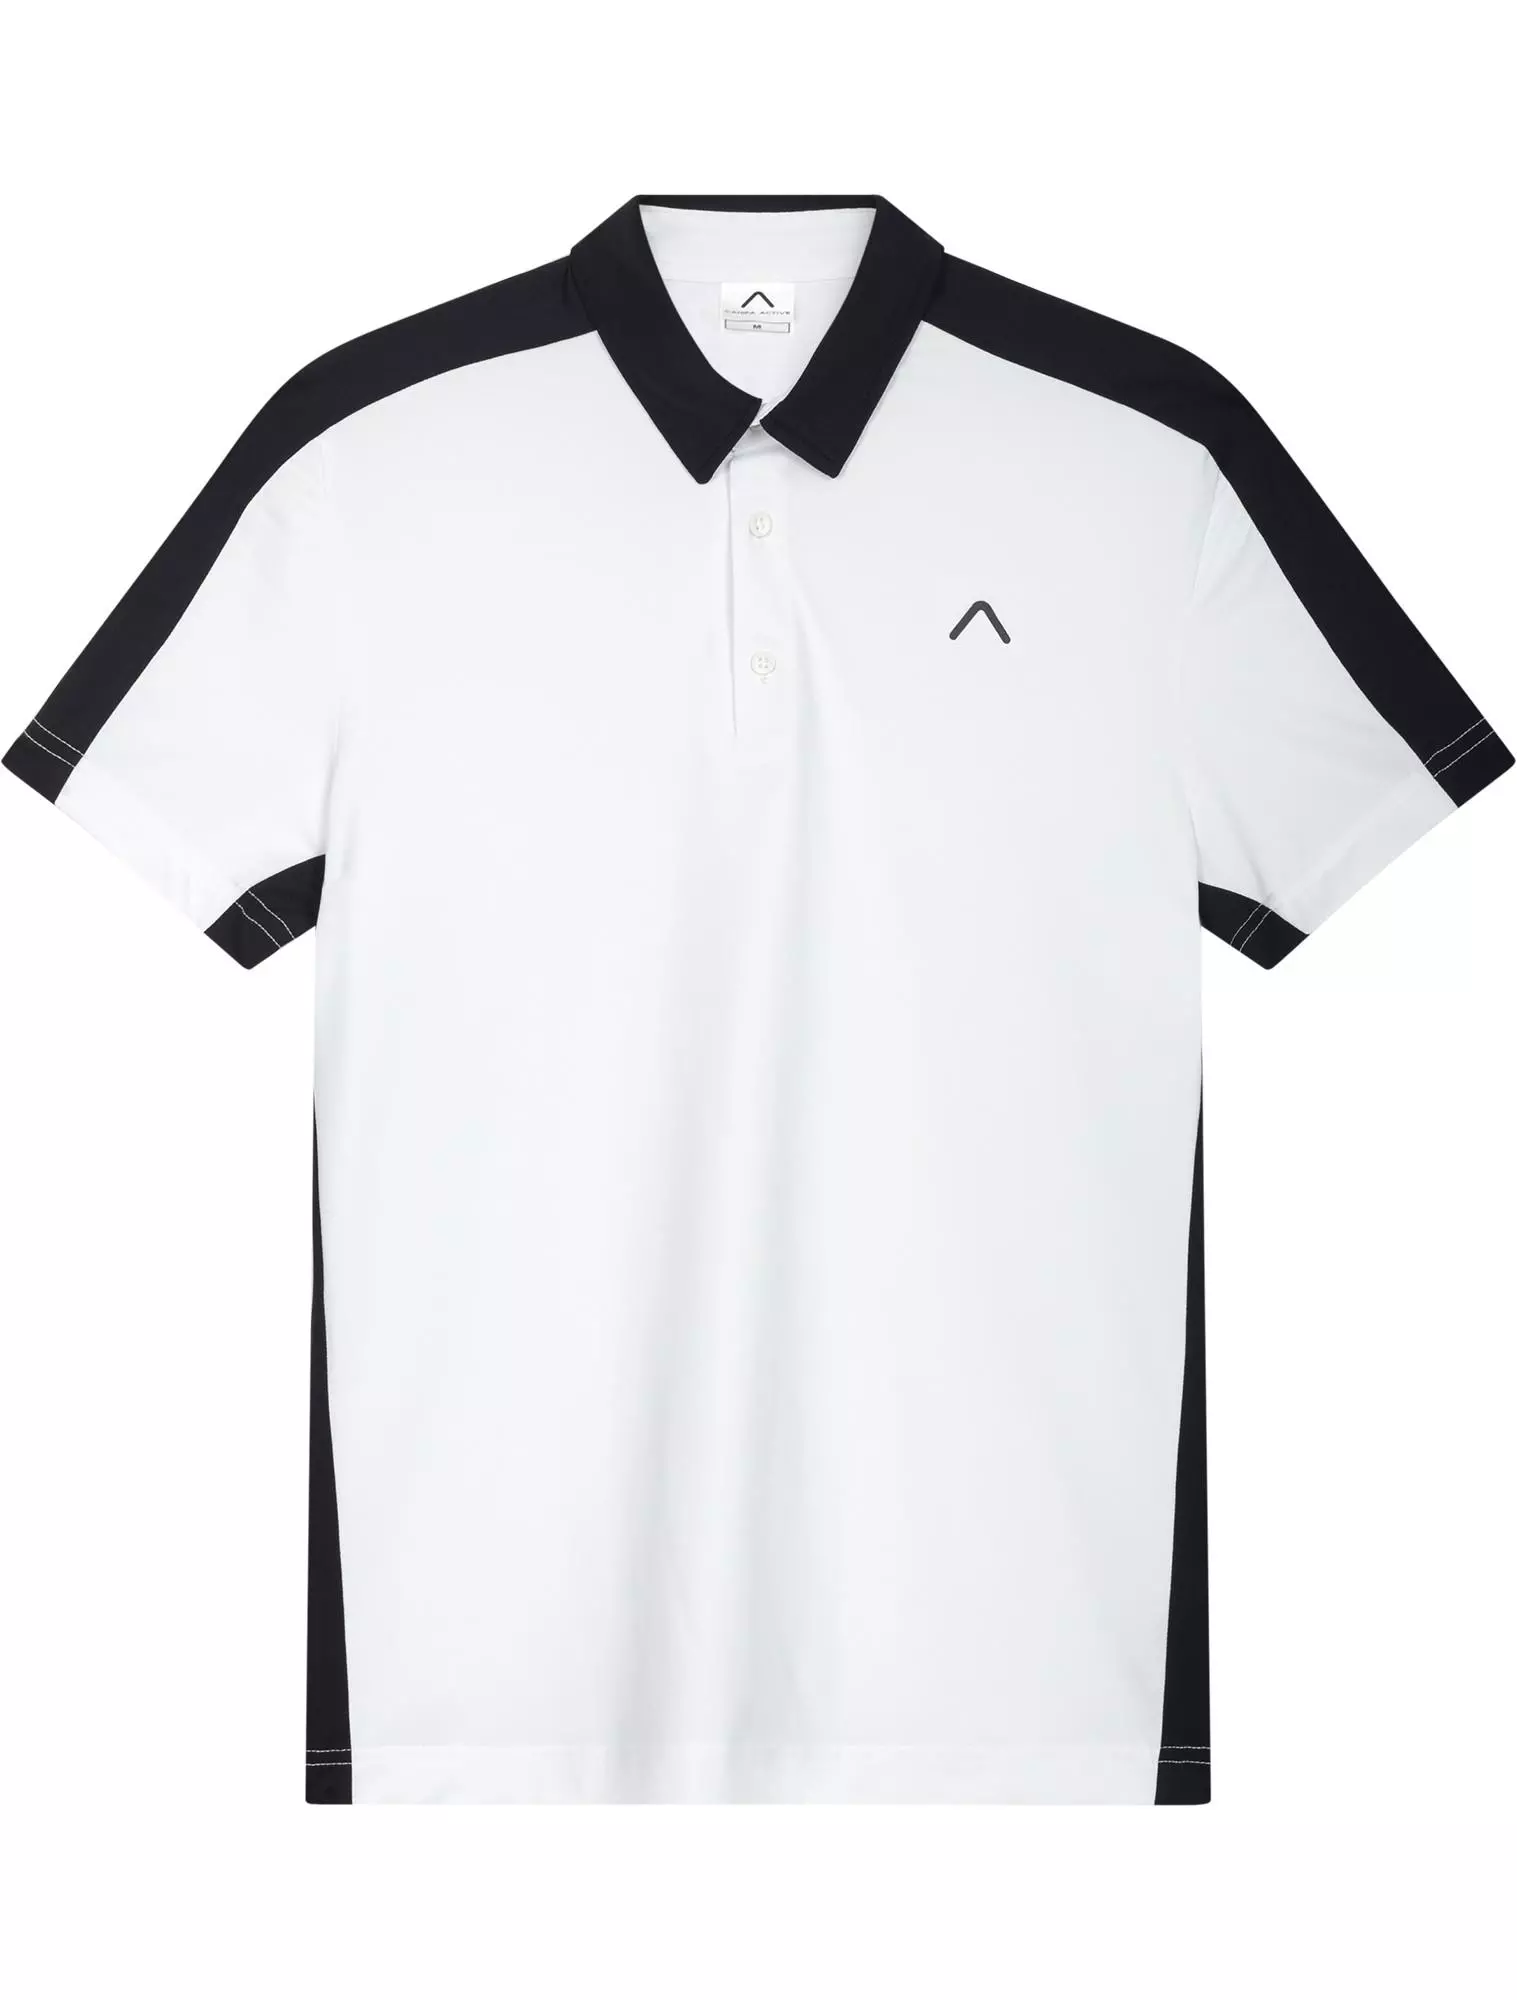 Men's Polyester Tennis Polo Shirt Bangladesh Made